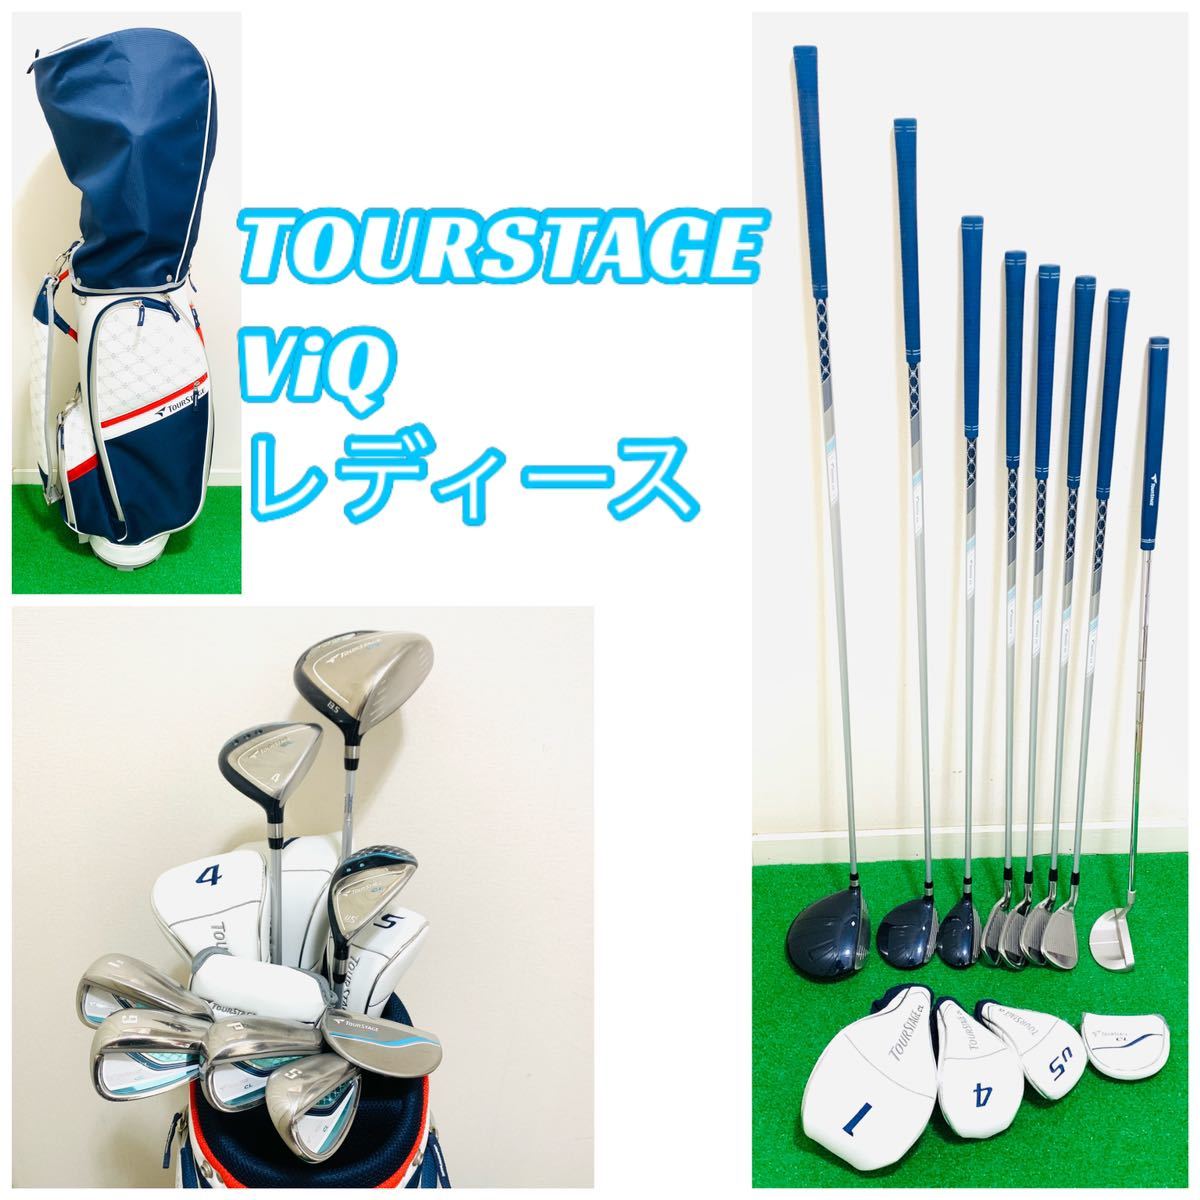 訳あり 豪華TOUR STAGE VIQ CL等女性ゴルフセット+キャデバッグ+オマケ